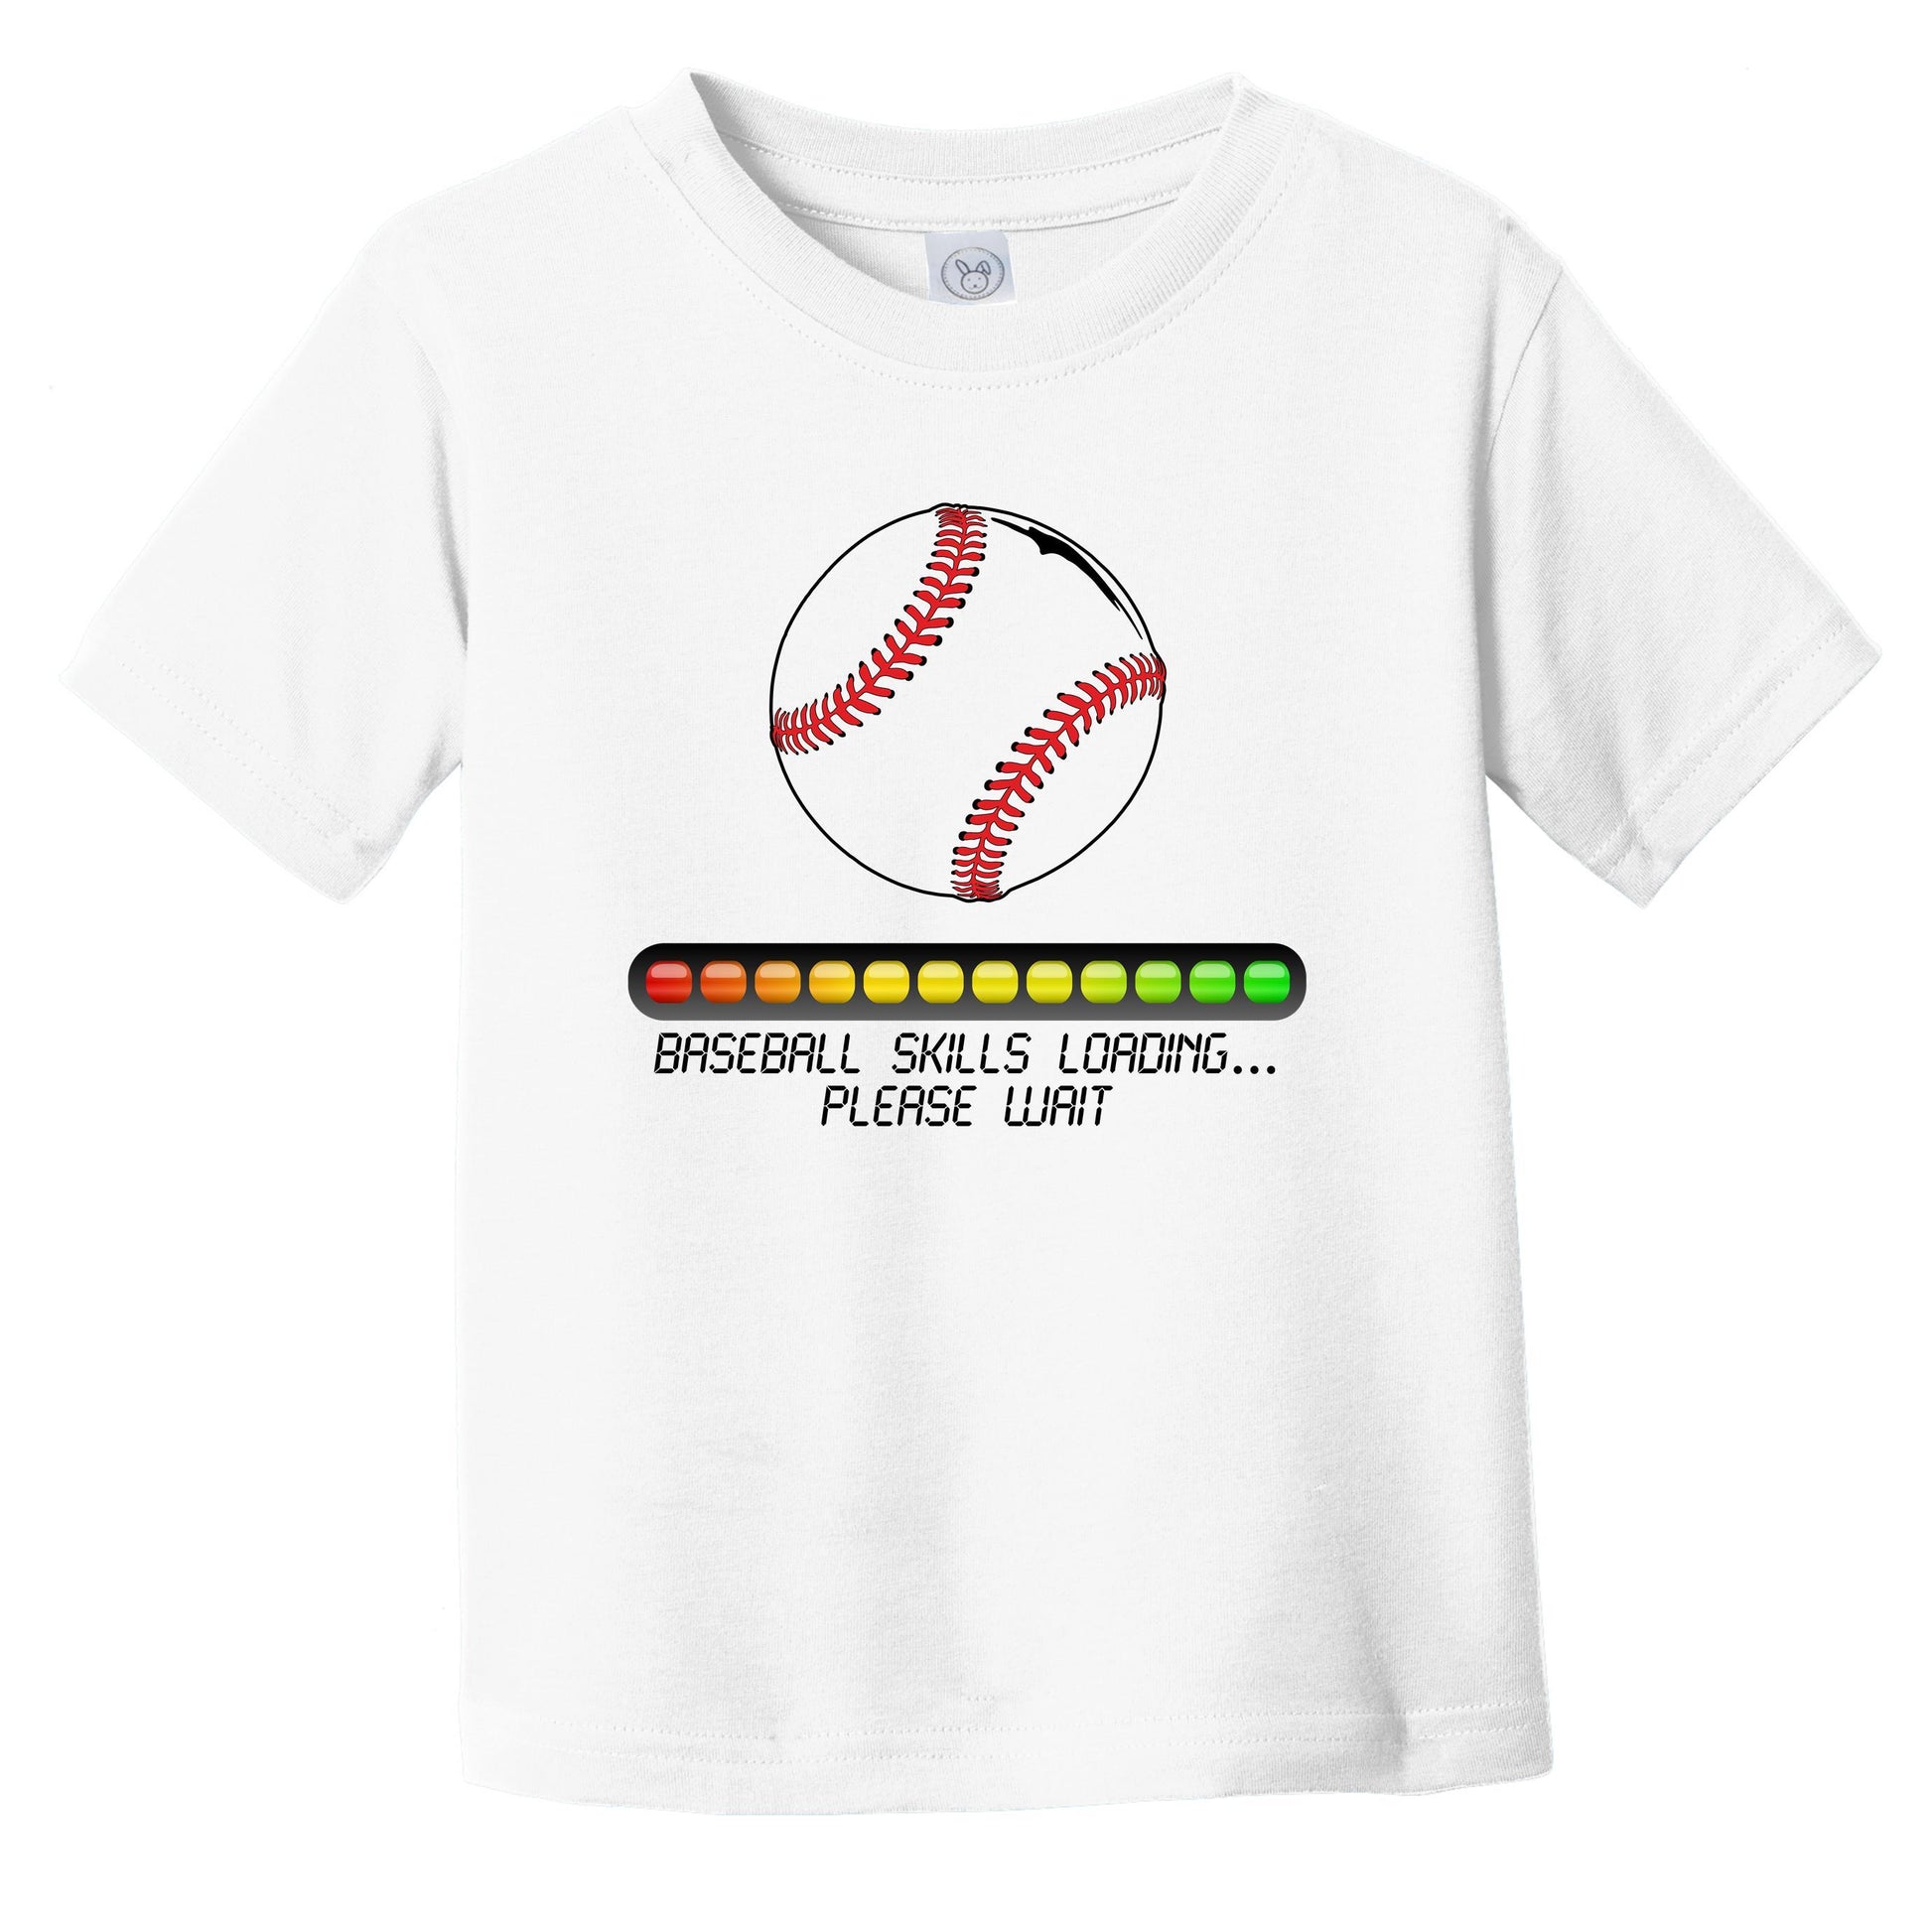 Baseball Skills Loading Funny Baseball Infant Toddler T-Shirt